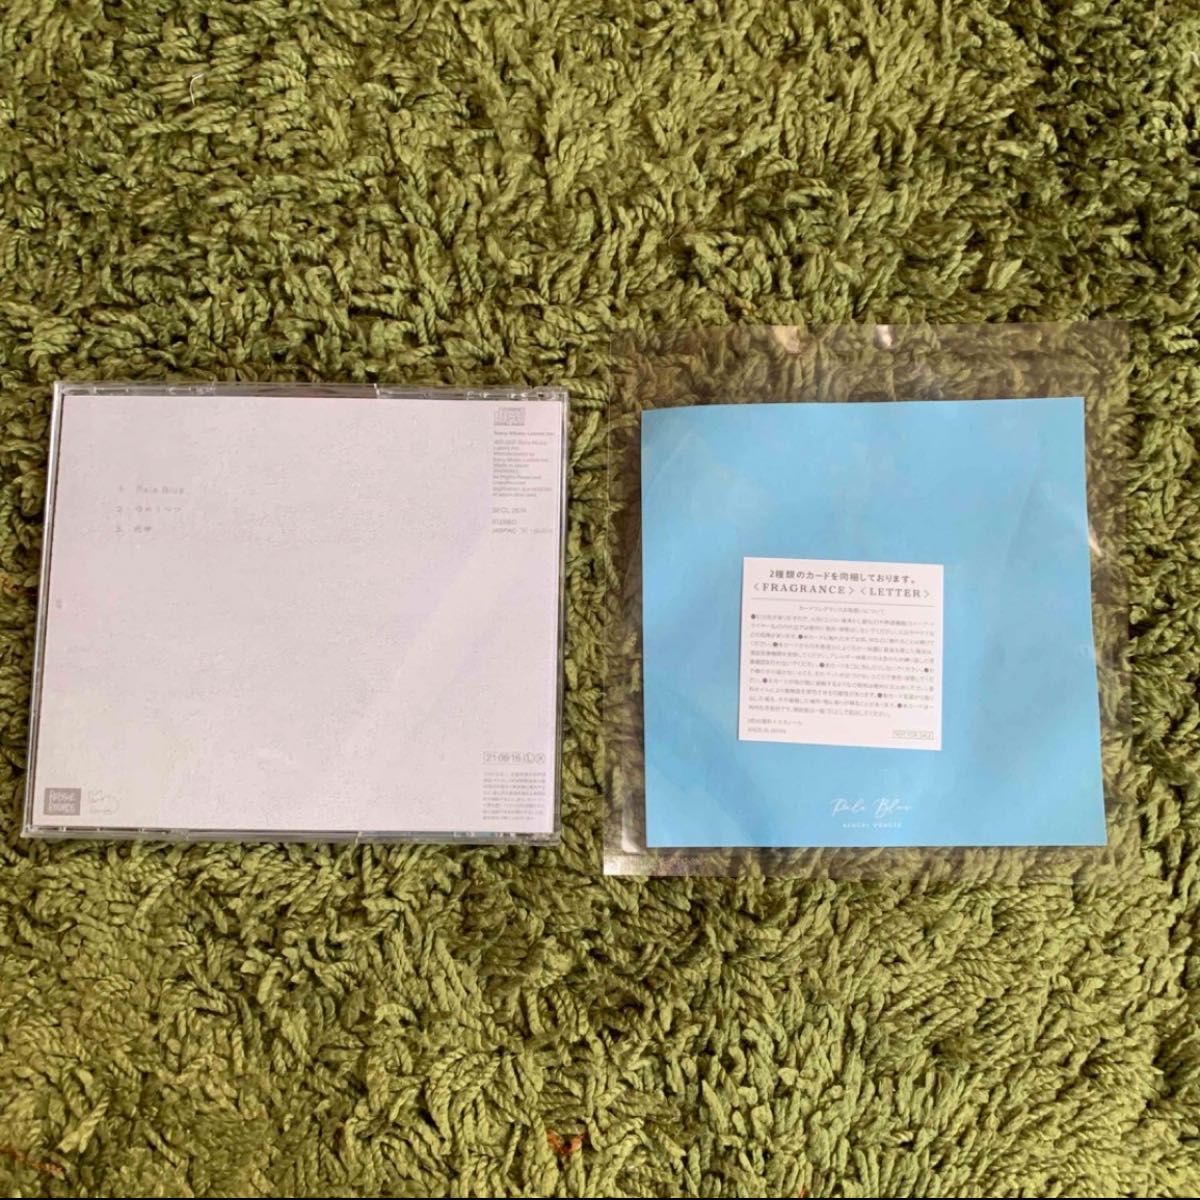  米津玄師  PeleBlue  FRAGRANCE LETTER CD アルバム　初回限定版　初回限定盤